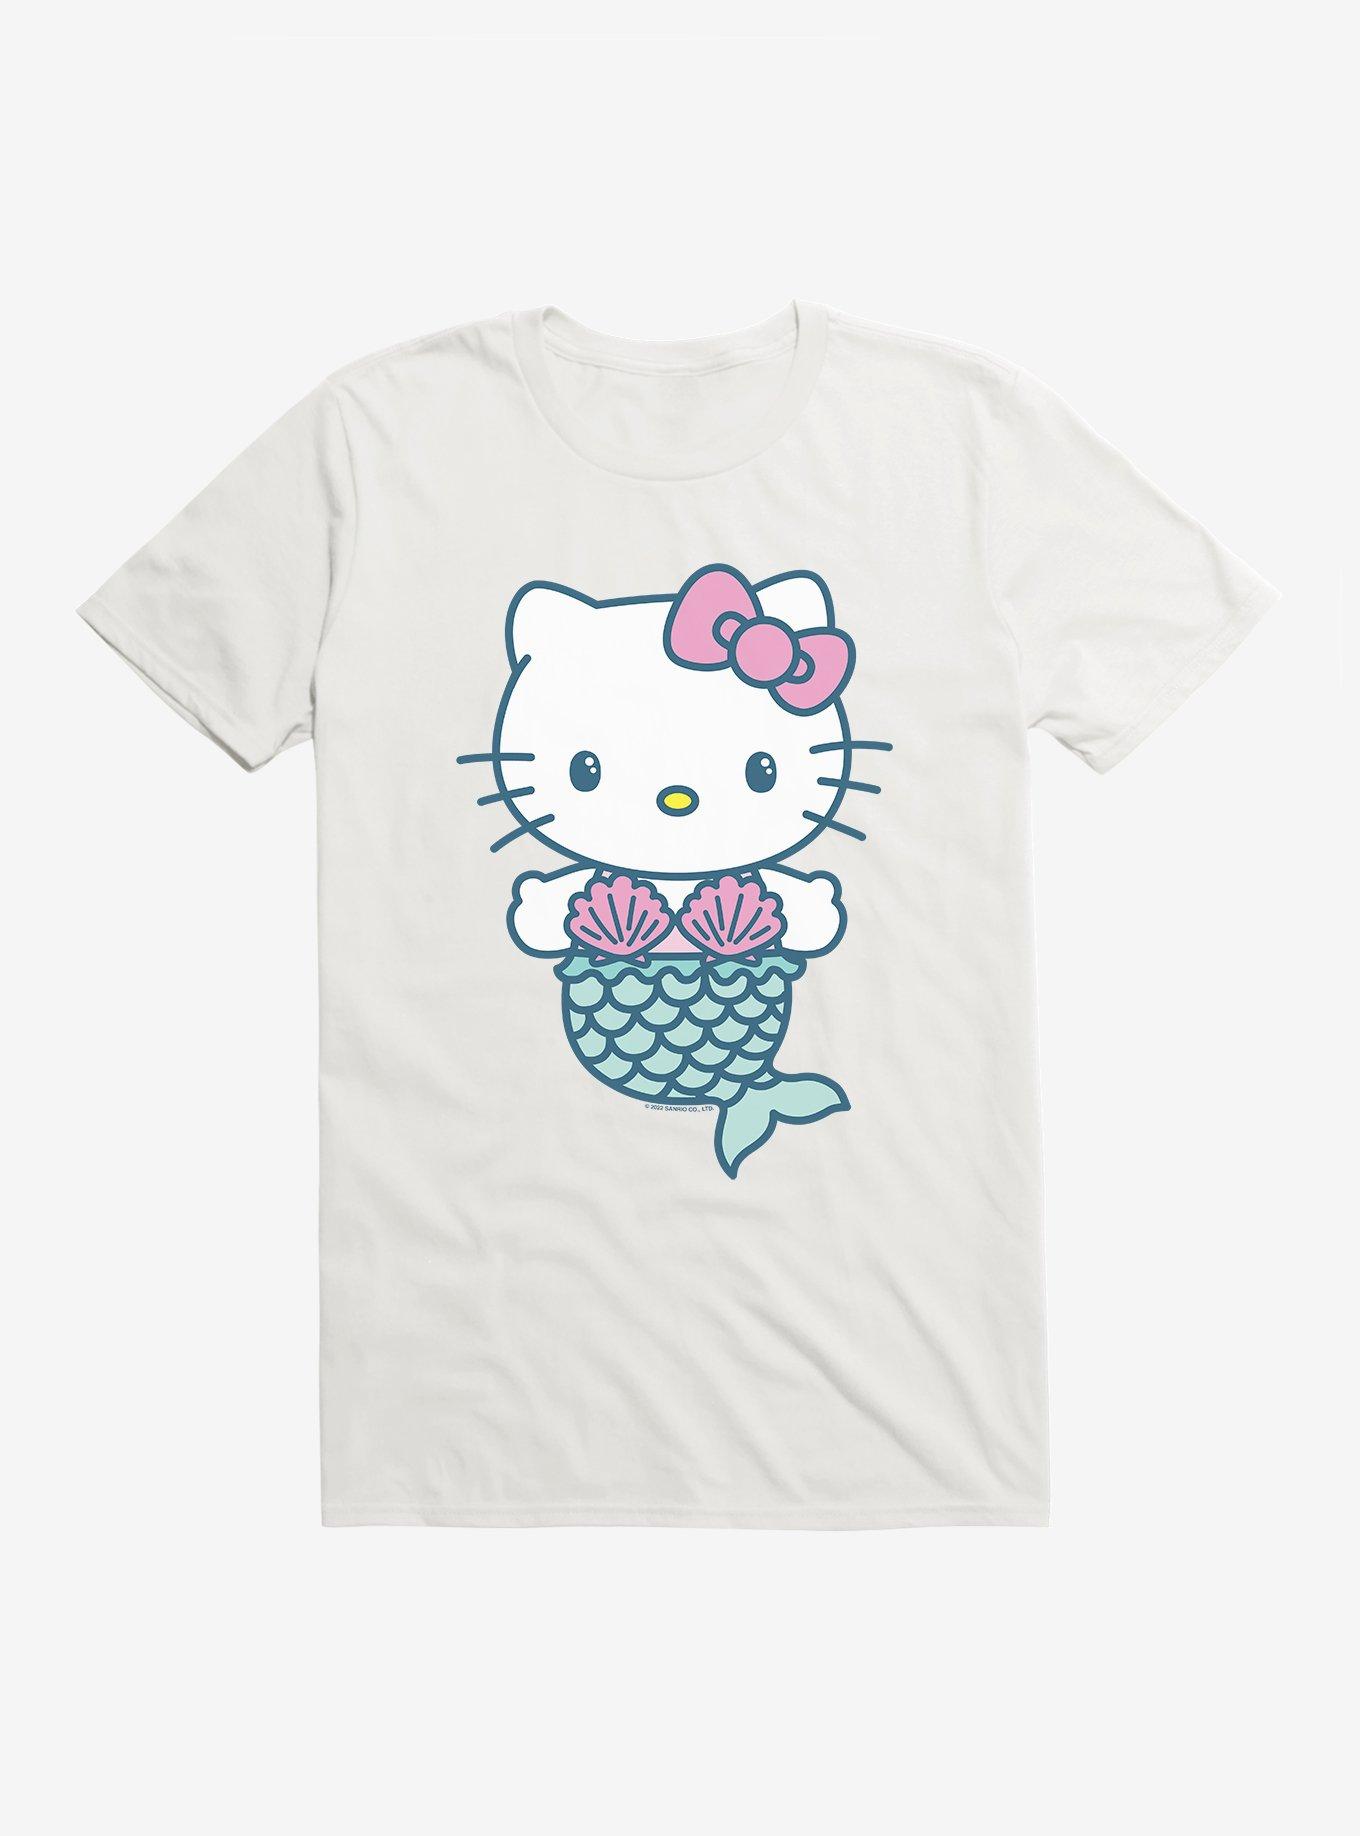 Hello Kitty Mermaid Cotton Fabric